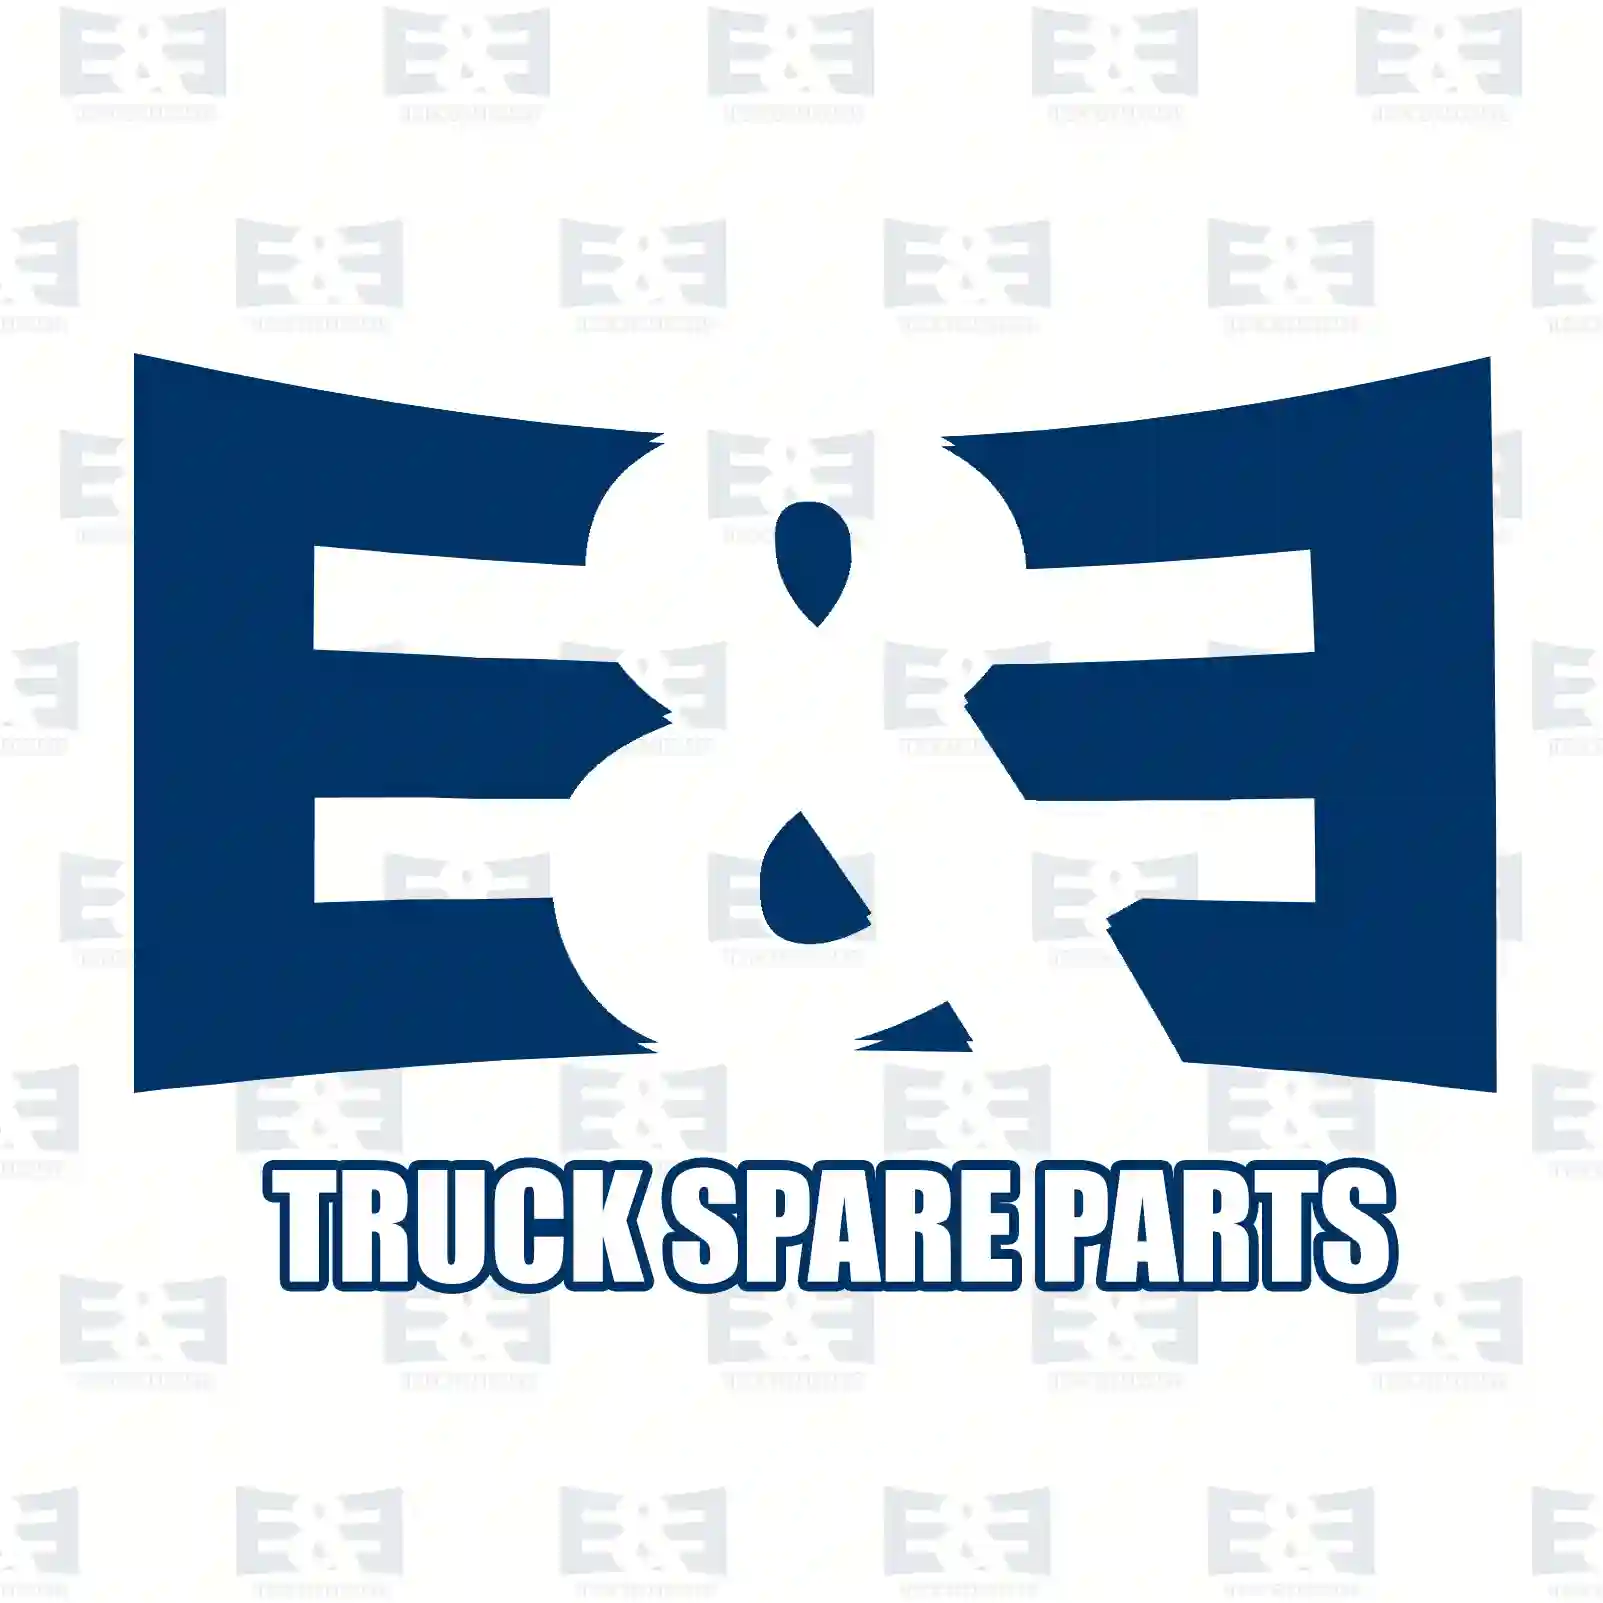 Hazard relay, 2E2298354, 5010415050, 5010415051, ZG20452-0008 ||  2E2298354 E&E Truck Spare Parts | Truck Spare Parts, Auotomotive Spare Parts Hazard relay, 2E2298354, 5010415050, 5010415051, ZG20452-0008 ||  2E2298354 E&E Truck Spare Parts | Truck Spare Parts, Auotomotive Spare Parts